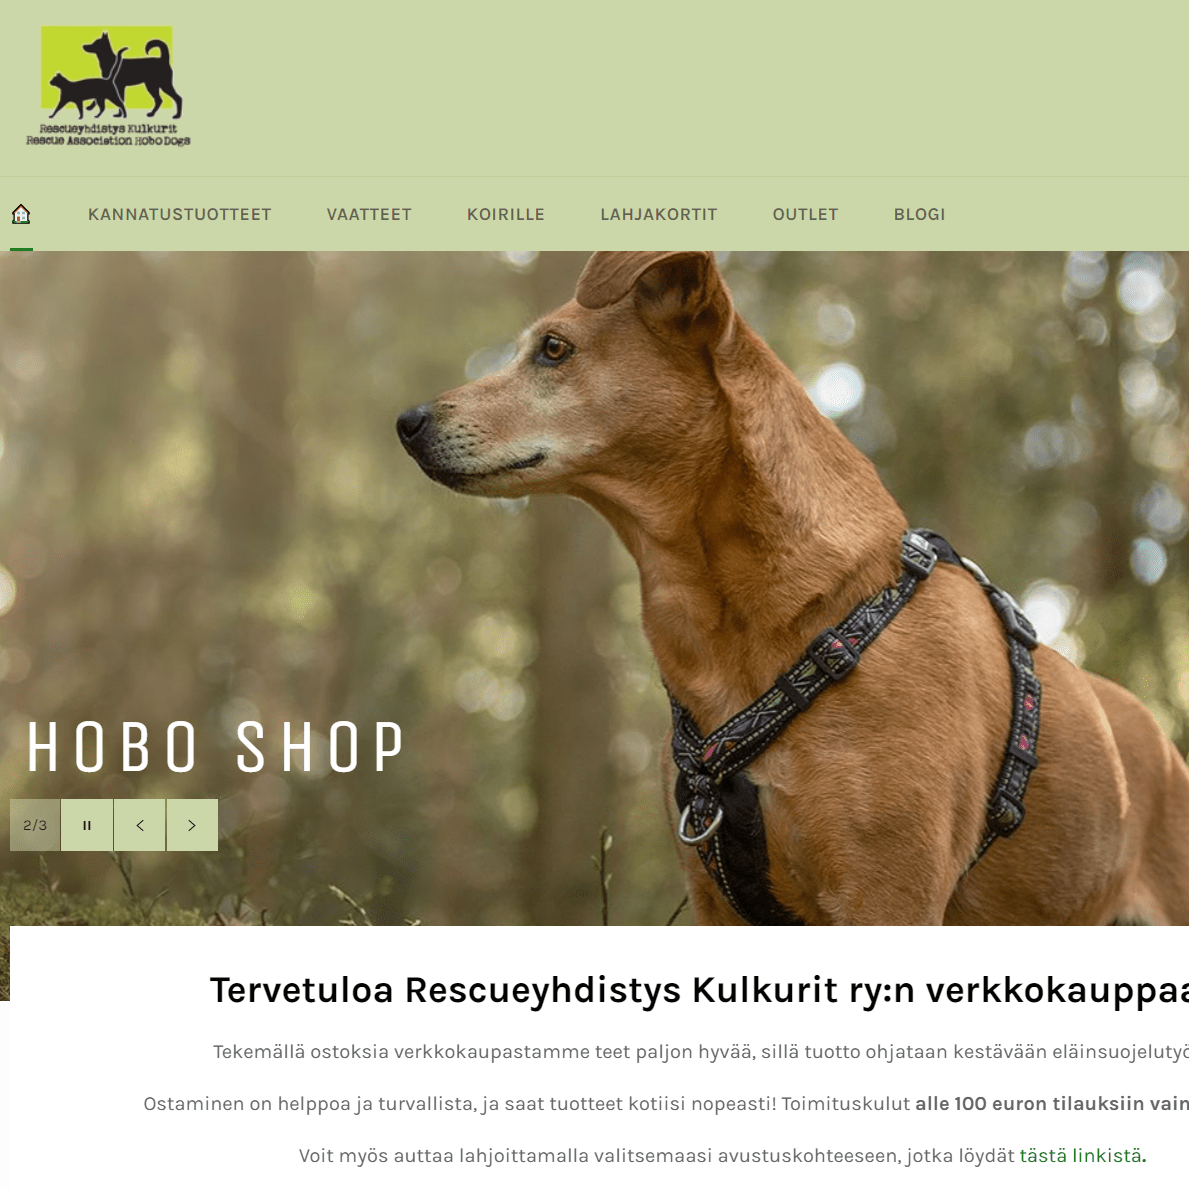 Uudistunut verkkokauppa on avattu – avajaishulinat Hobo Shopissa 3.-6.6.